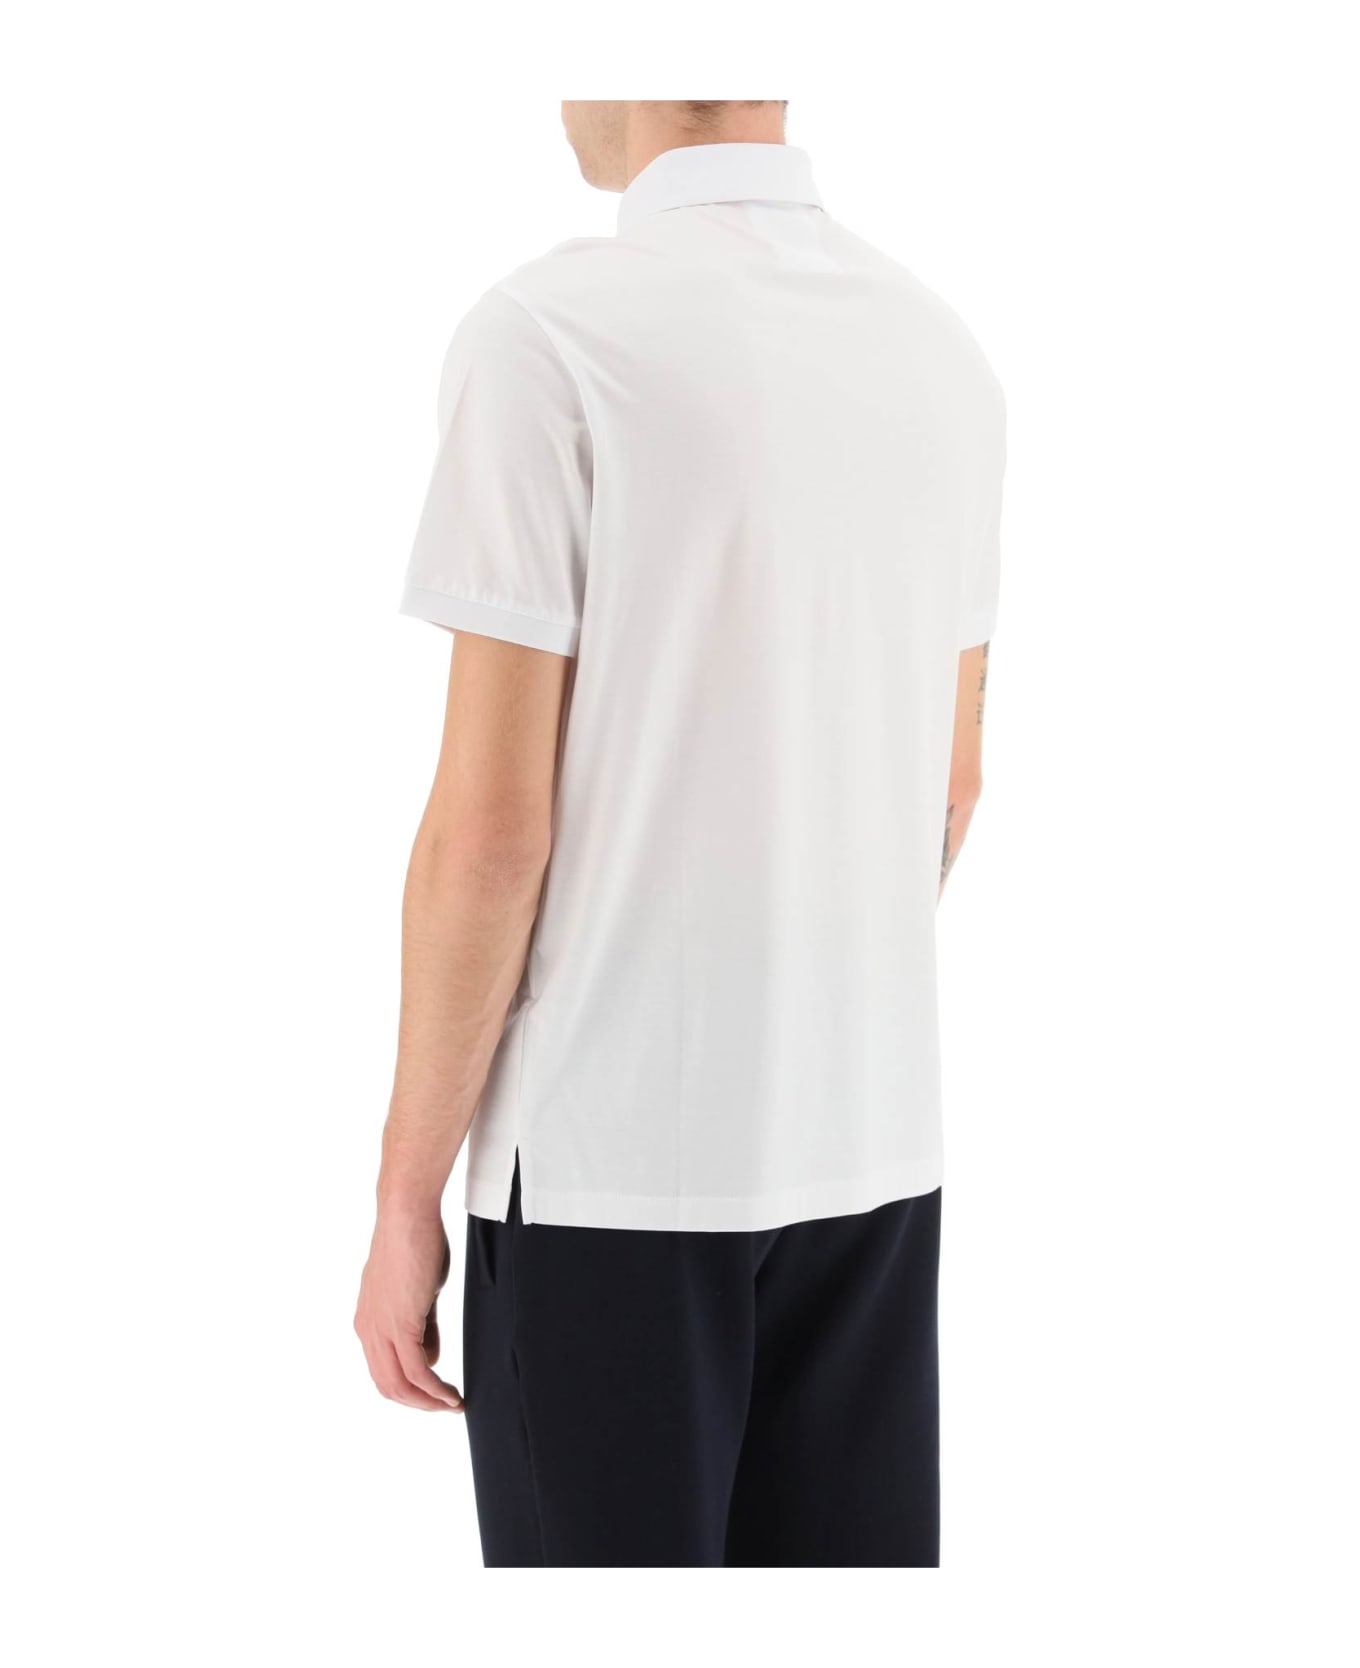 Emporio Armani Lyocell And Cotton Polo Shirt With Micro Logo Emporio Armani - BIANCO OTTICO (White) ポロシャツ